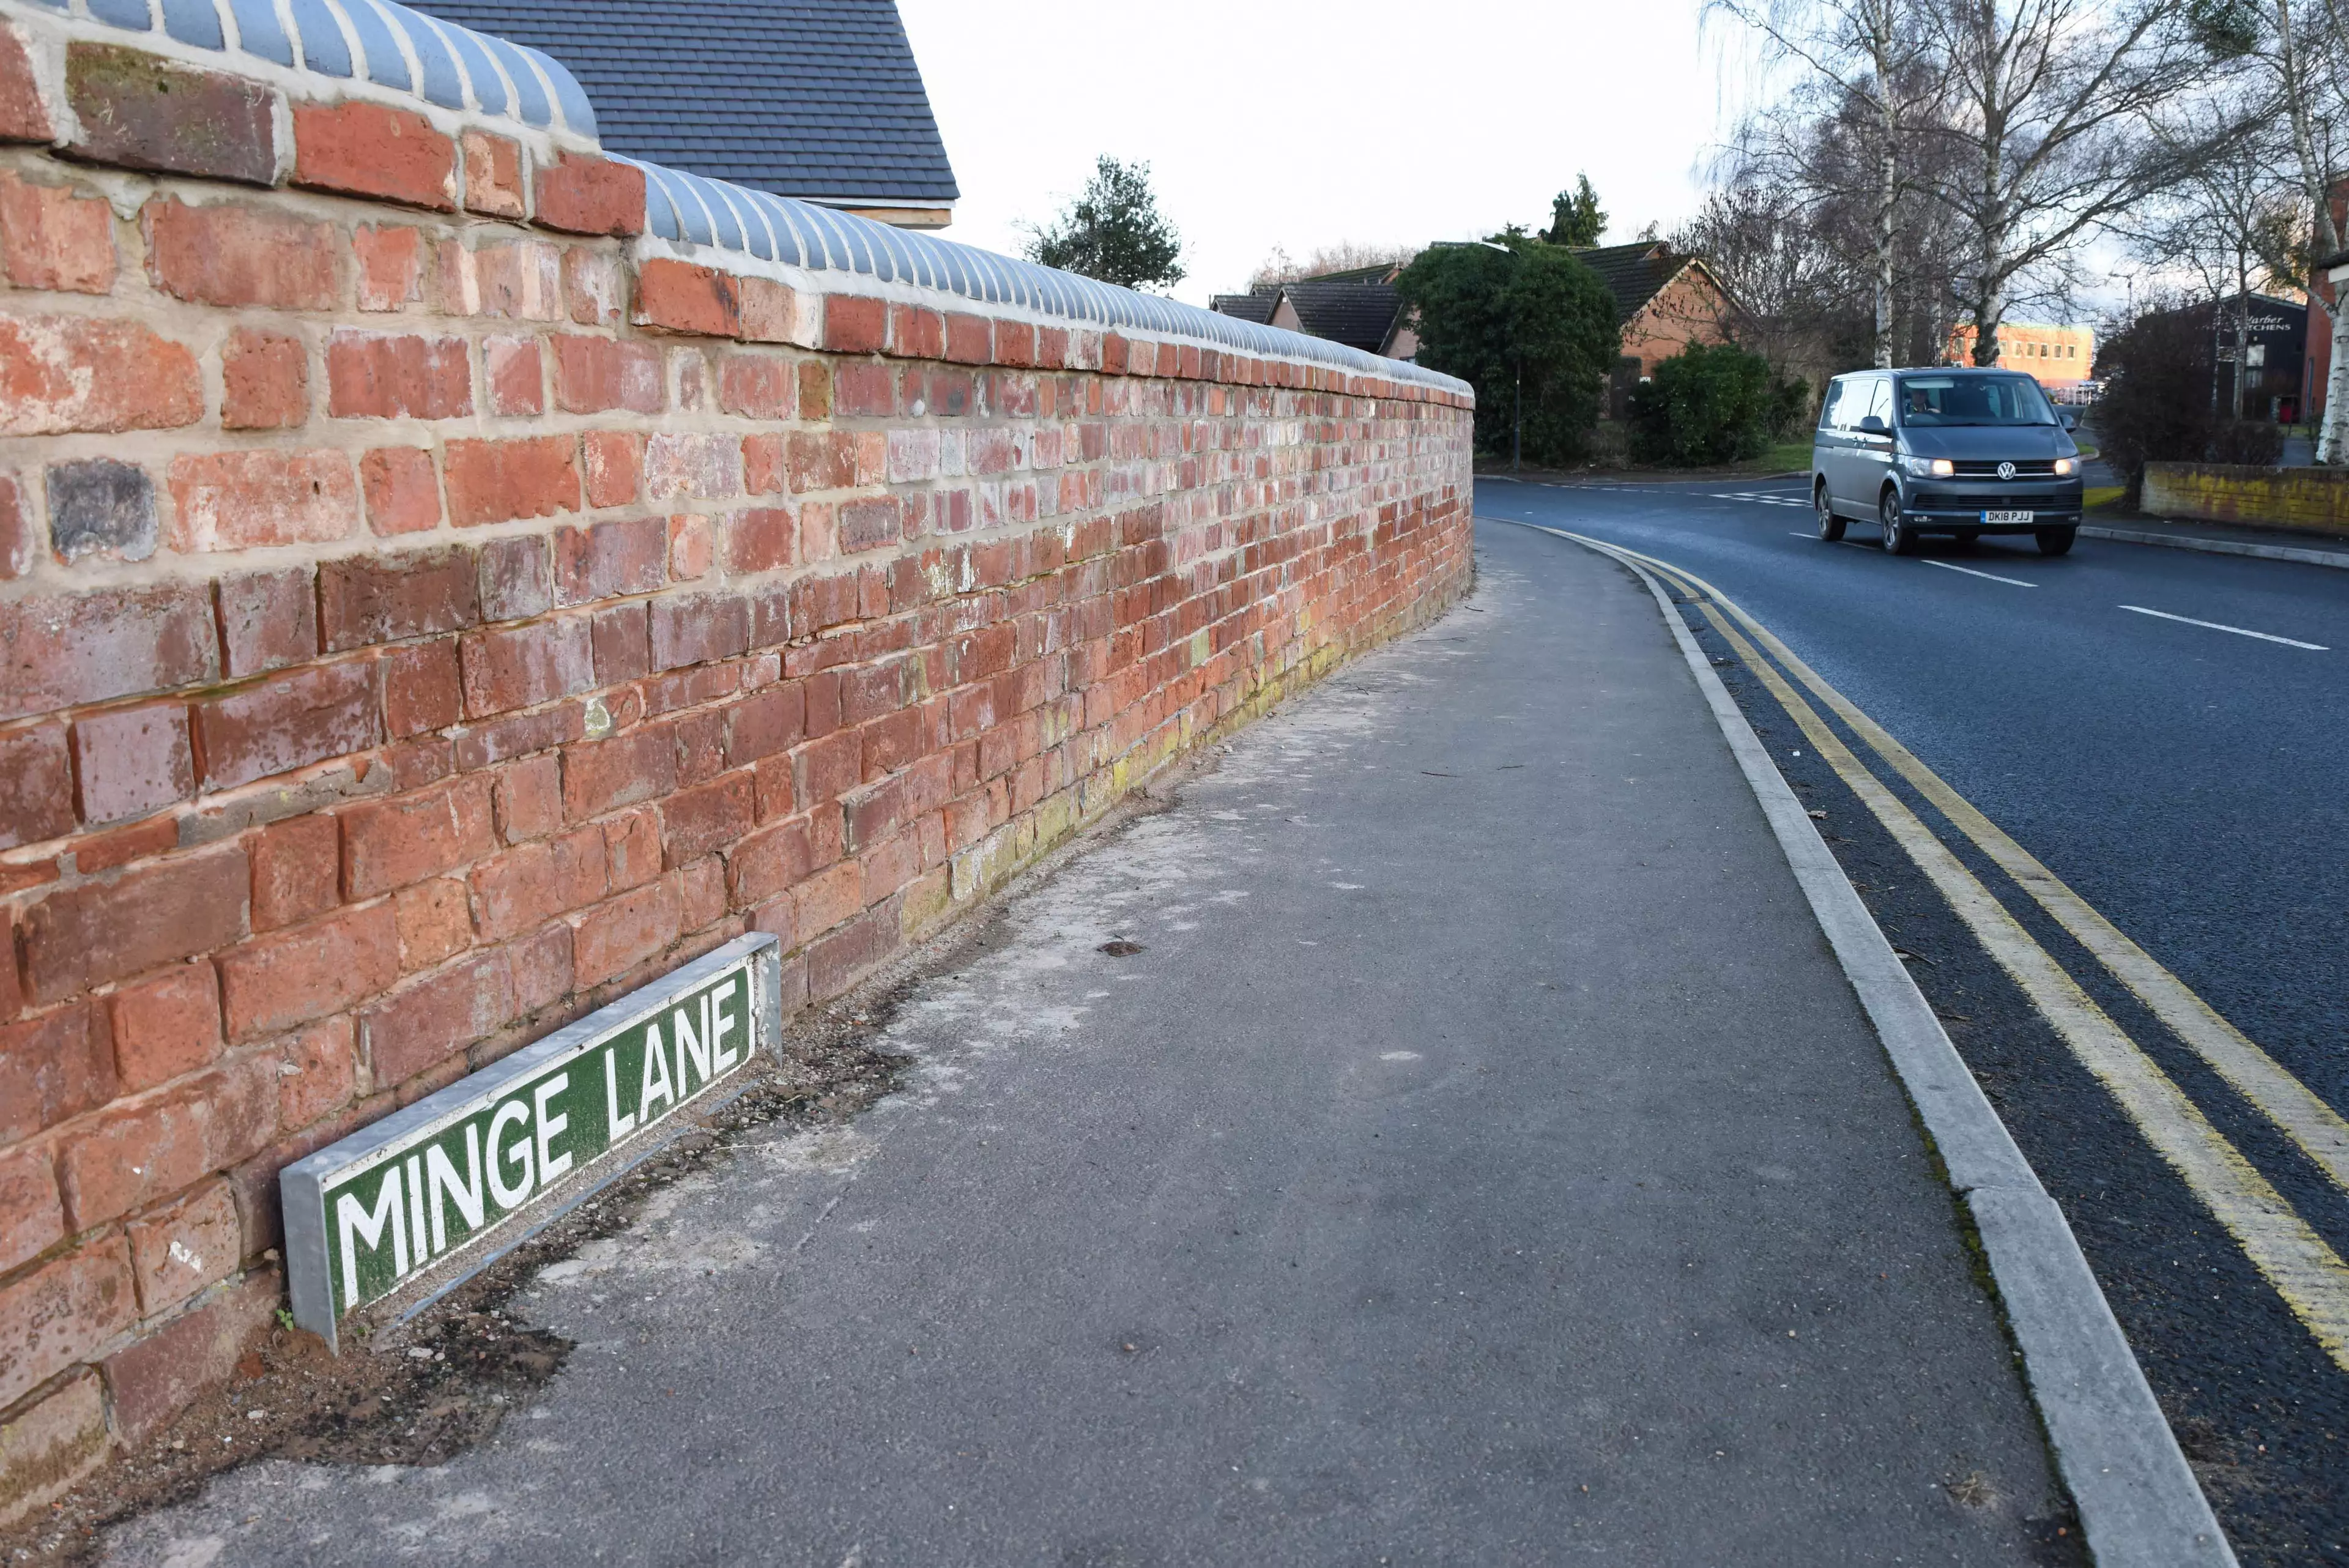 Minge Lane in Upton-upon-Severn.